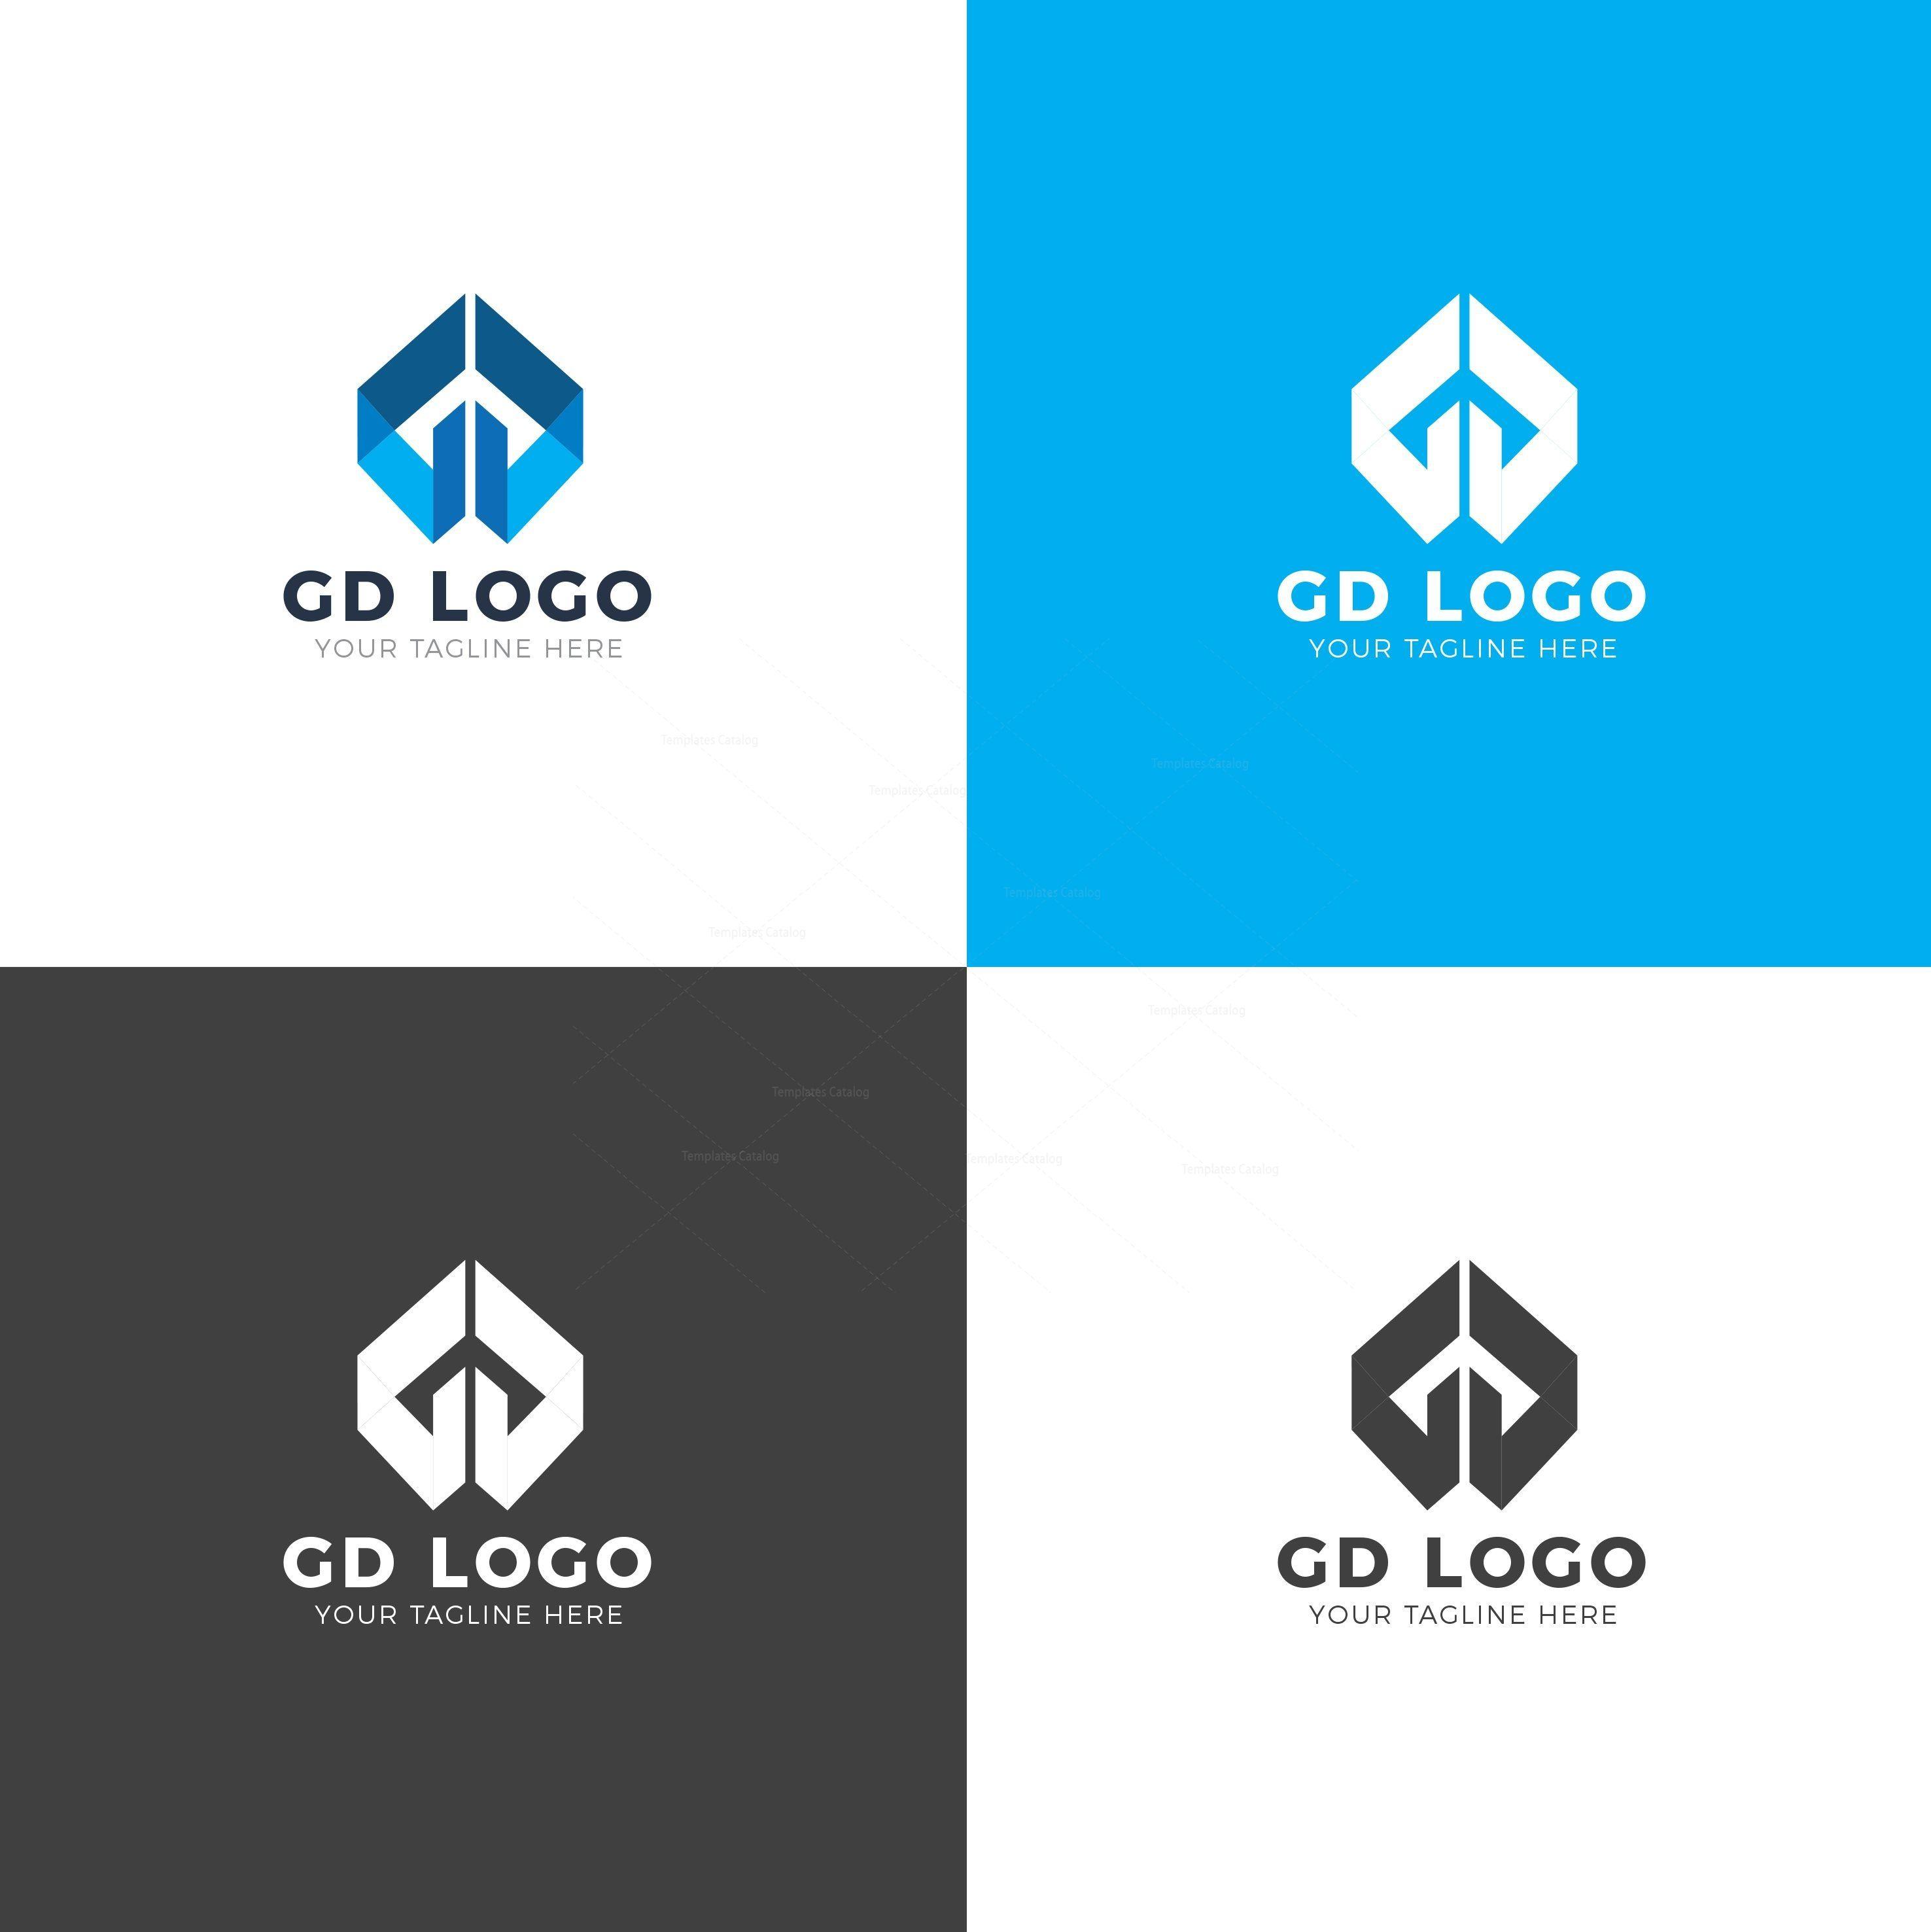 GD Logo - GD Professional Logo Design Template 001854 - Template Catalog